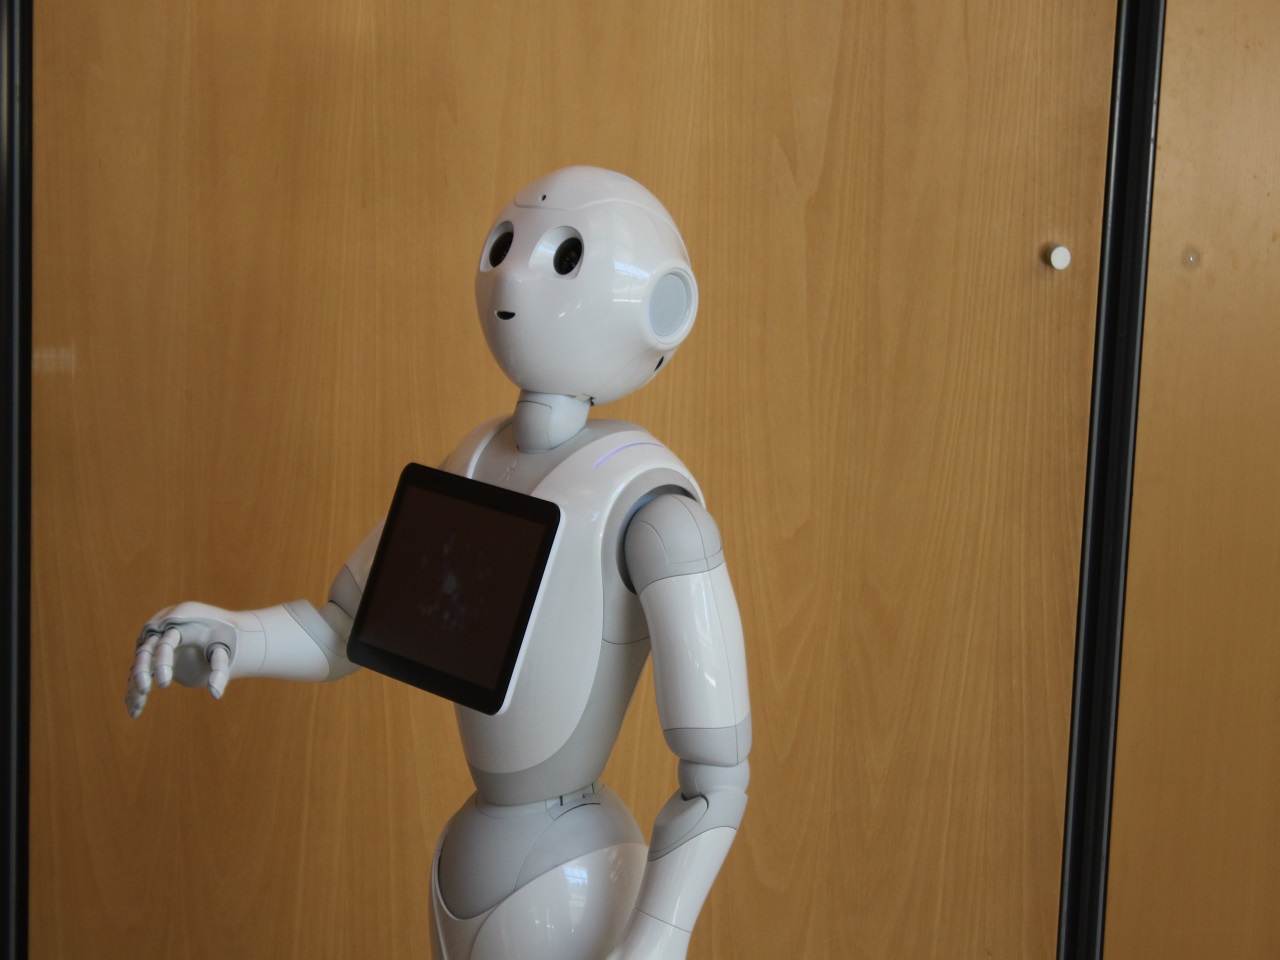 Le robot japonais Pepper est tourné vers le public car il est capable de lire les expressions faciales des personnes et adapte ses réponses en fonction de l’humeur de son interlocuteur - LyonMag